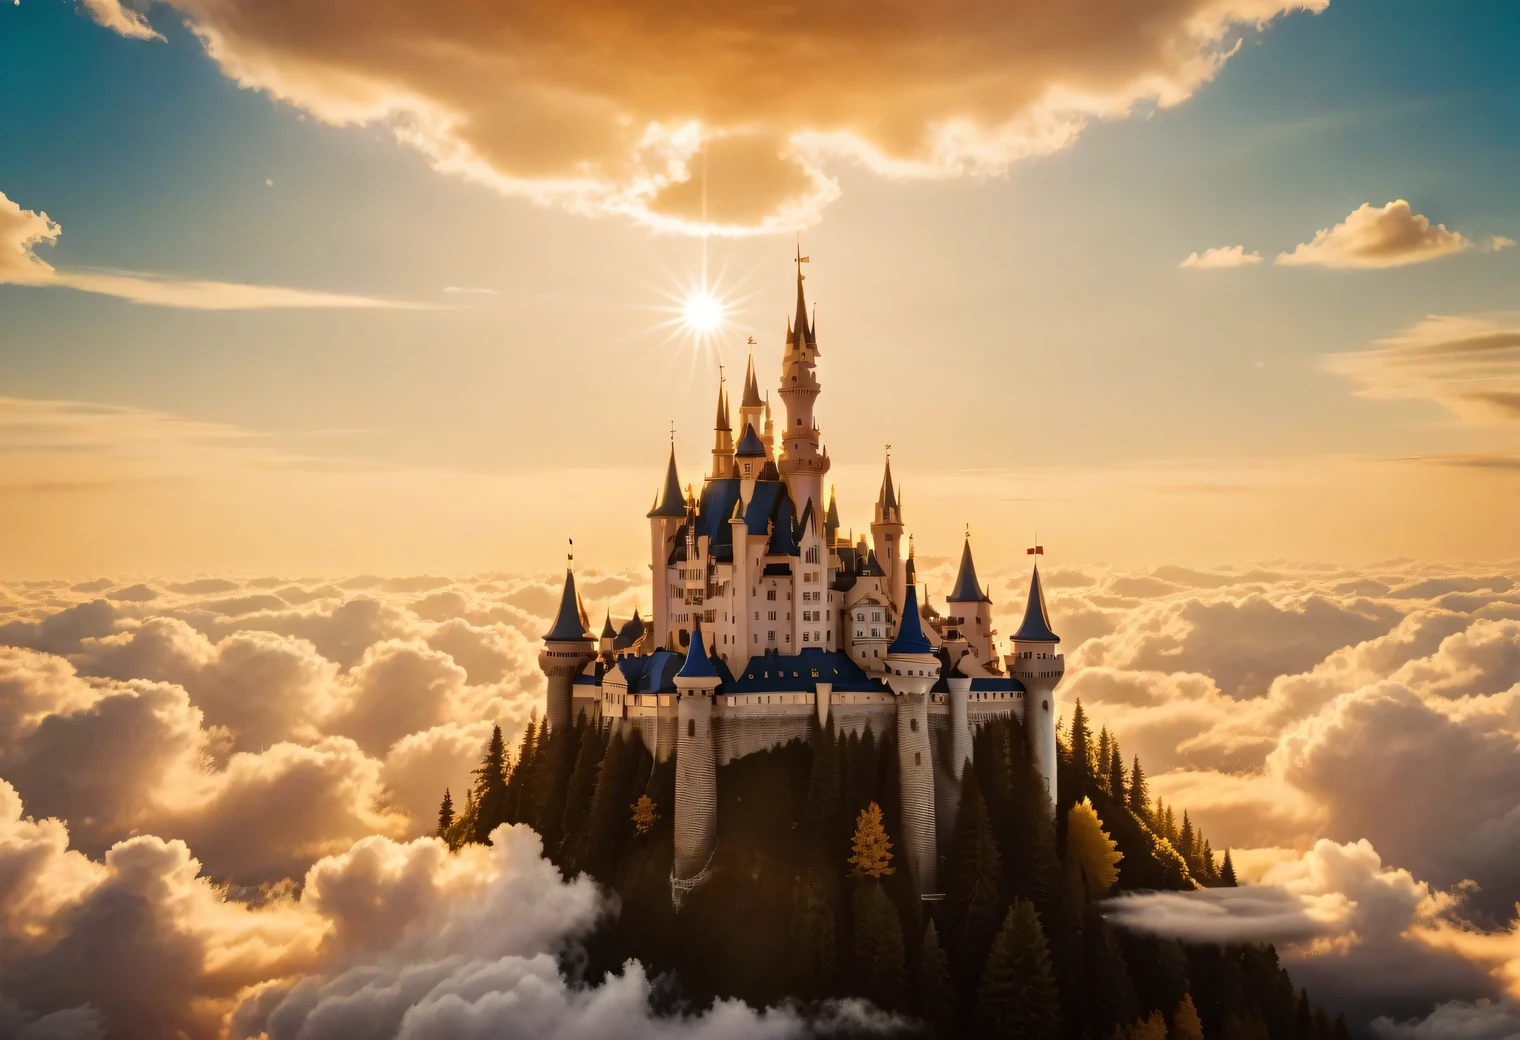 類比攝影, 天空云层间有一座闪亮的梦幻城堡, 梦幻城堡非常美丽精致，周围云朵环绕，金色光芒和金色光芒, 金色光芒从梦幻城堡中散发出来, 實際的, 詳細的, 高解析度, 32k,模拟照片